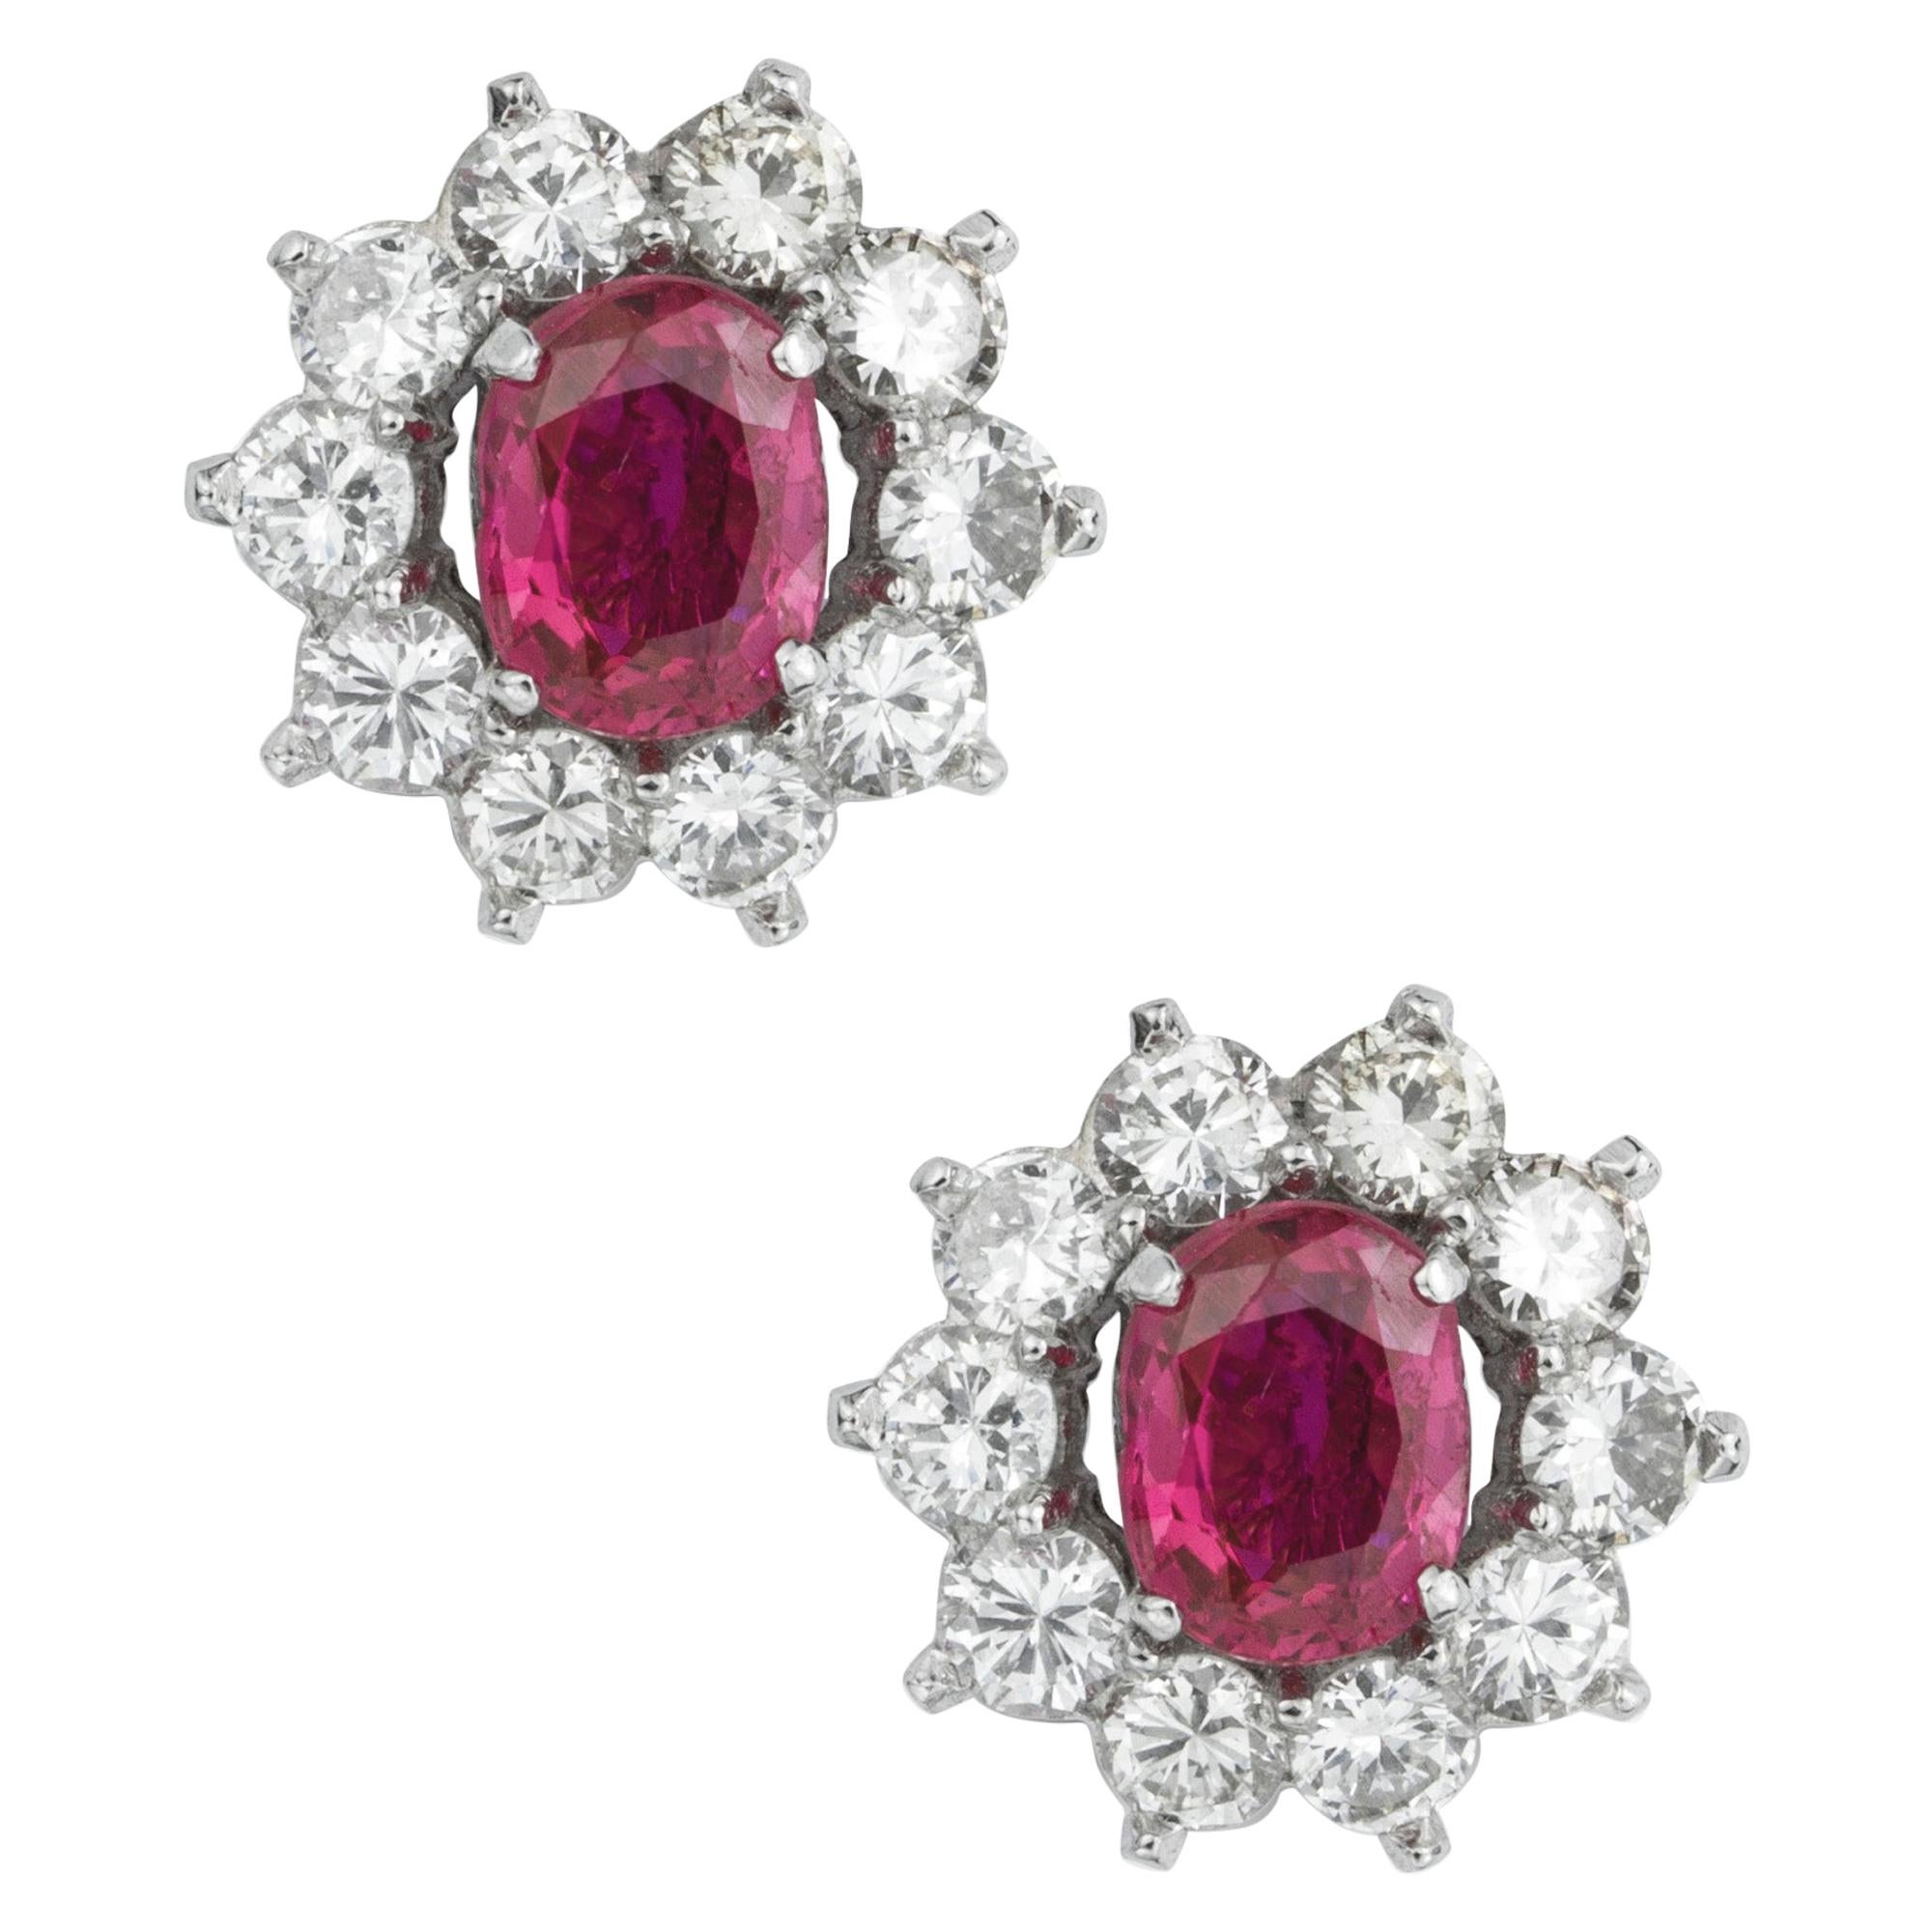 Pair of Burmese Rubies and Diamond Cluster Earrings